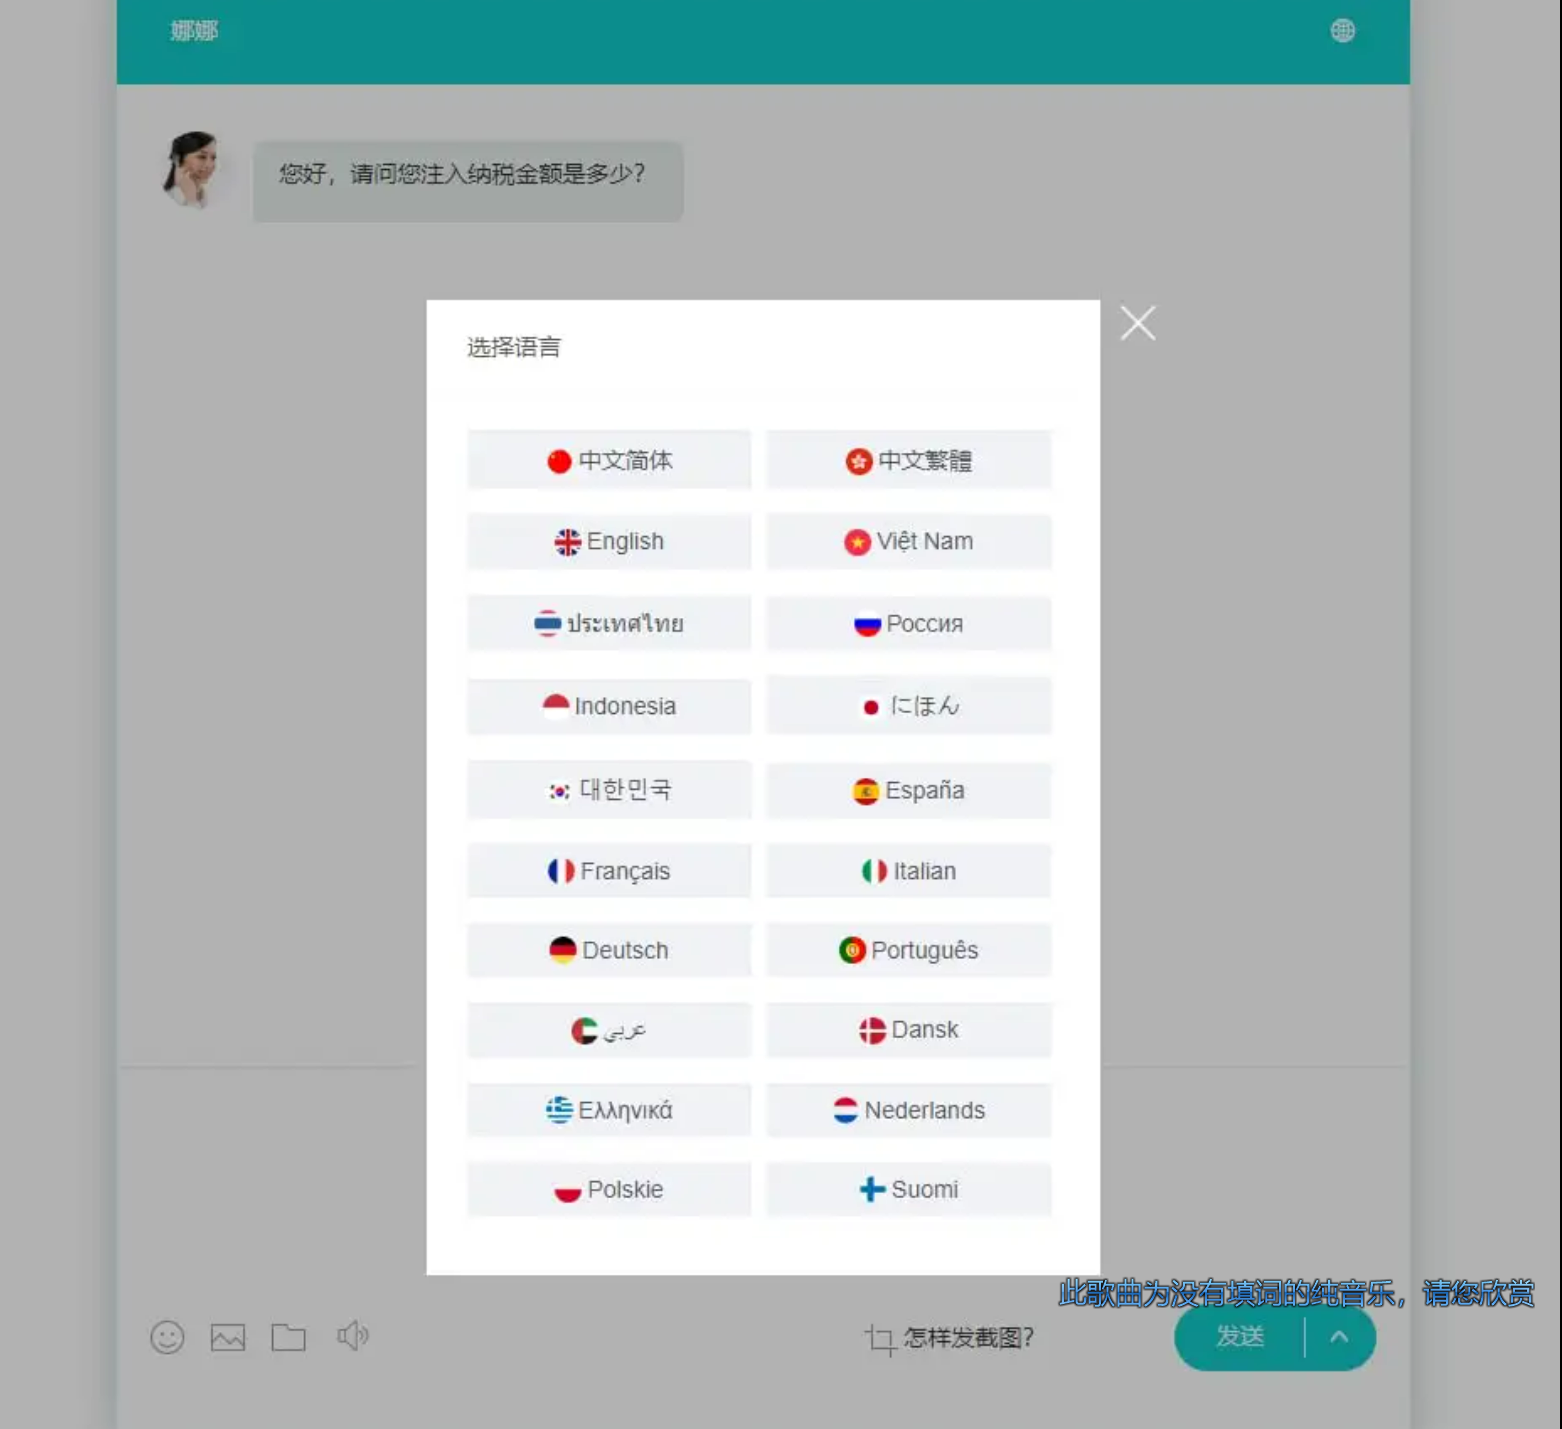 20国语言在线客服系统/AI智能客服插图